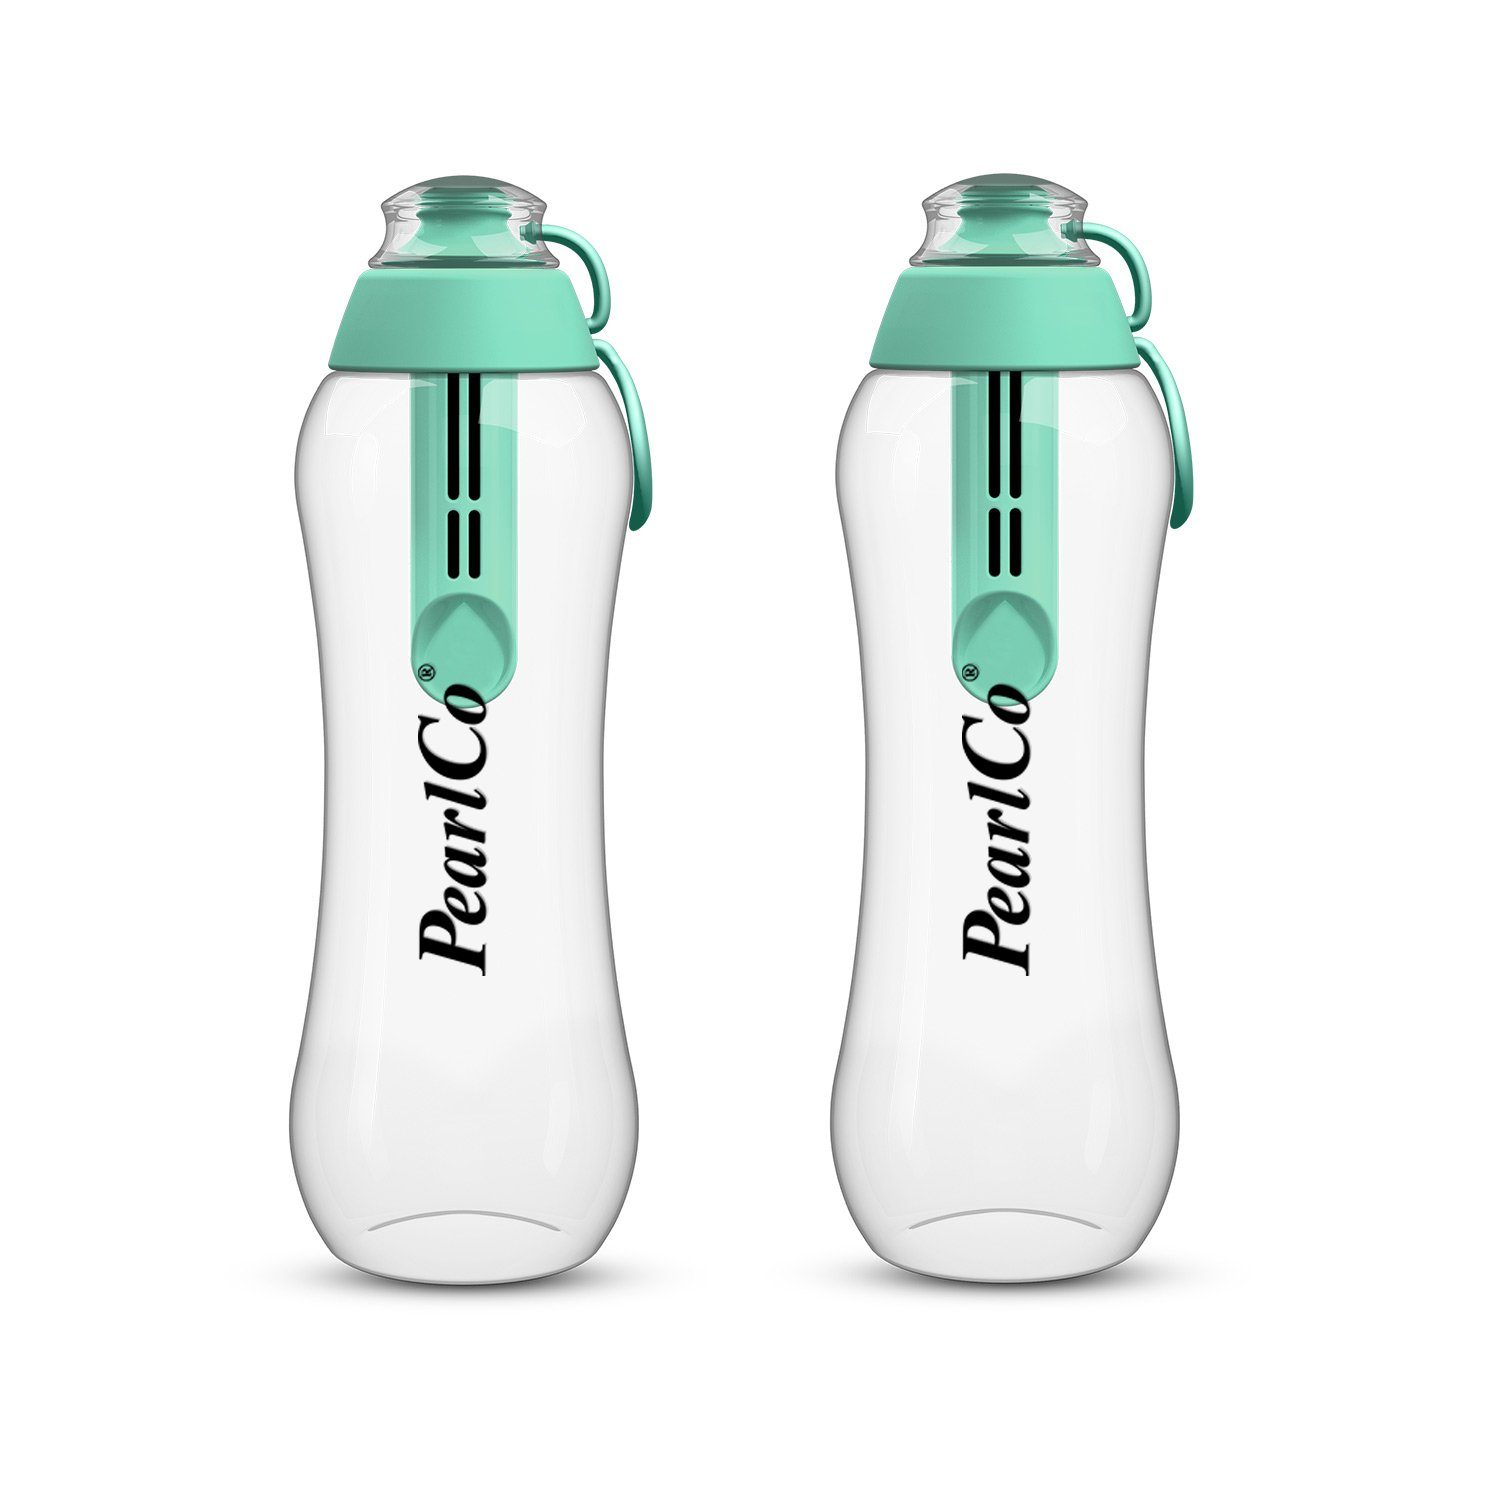 Filter Trinkflasche mint Liter 0,5 Zwei Trinkflaschen mit PearlCo